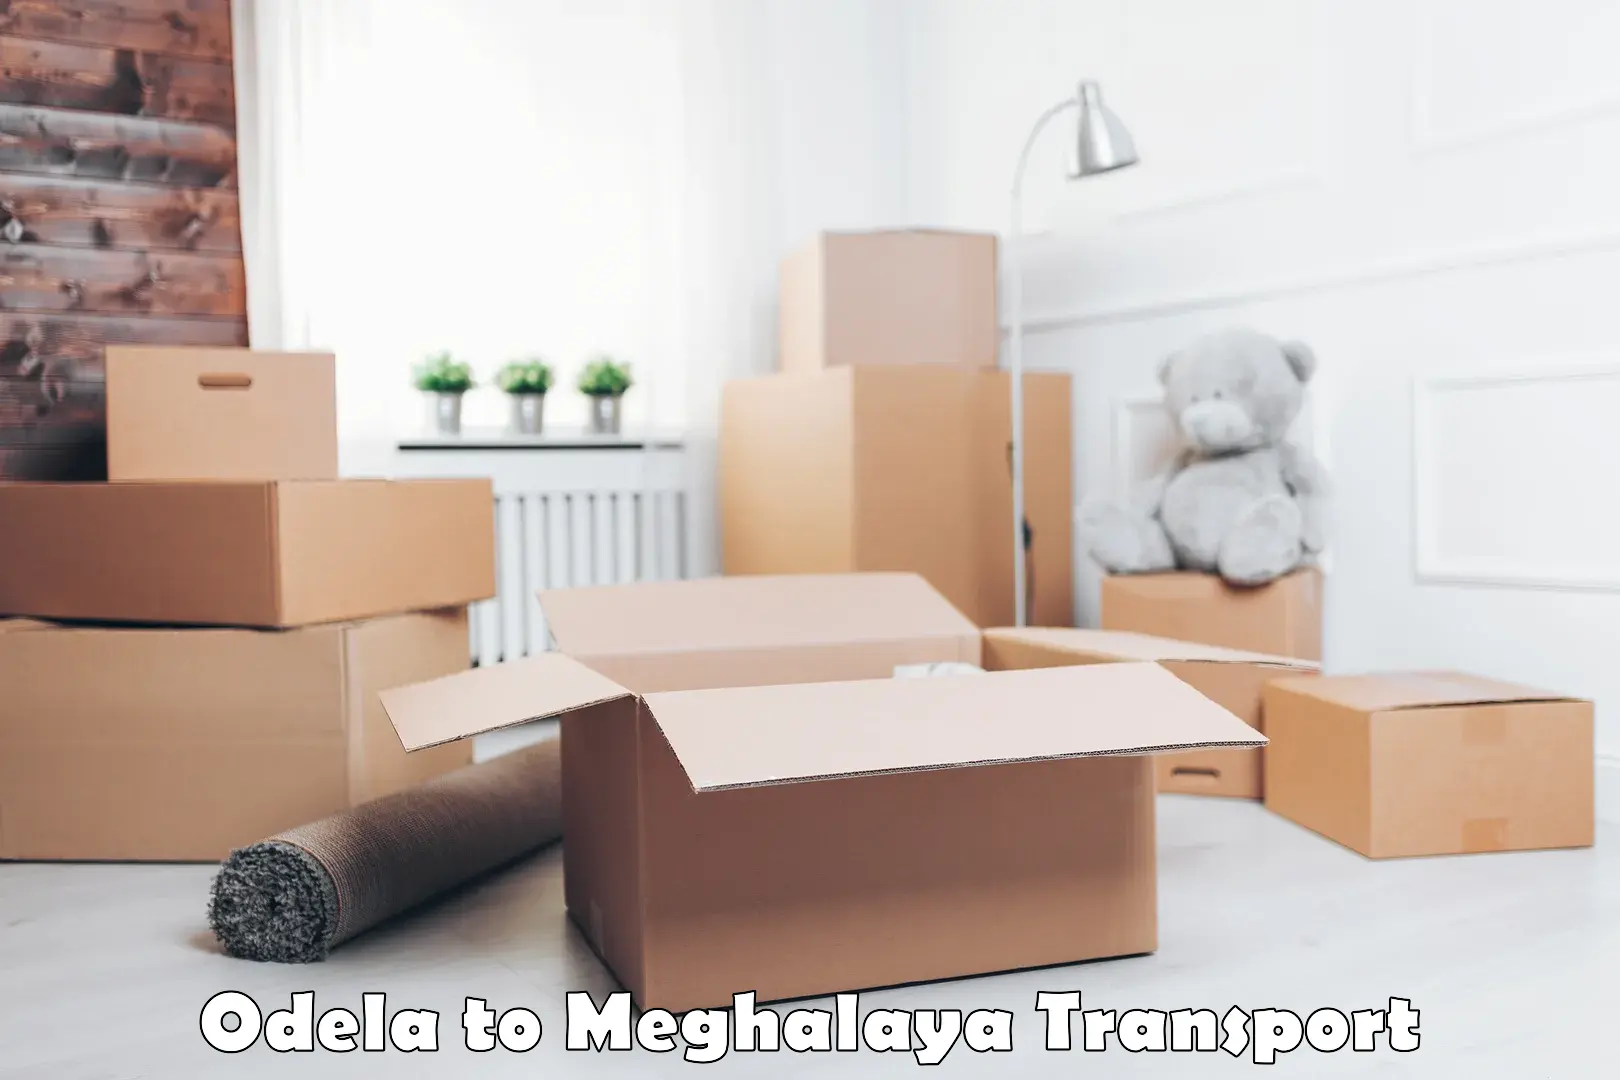 Furniture transport service Odela to Umsaw